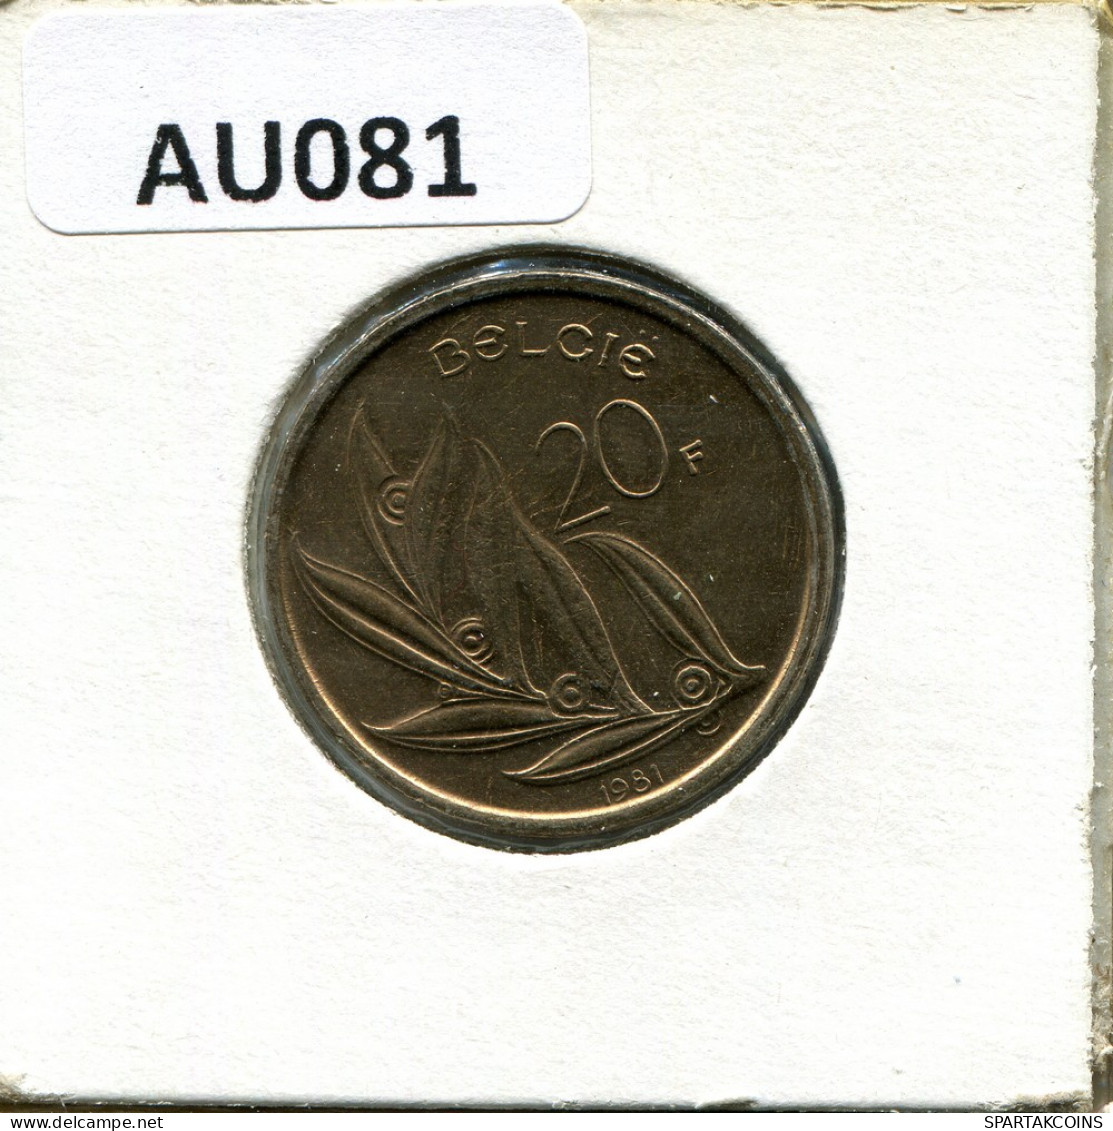 20 FRANCS 1981 DUTCH Text BELGIUM Coin #AU081.U - 20 Francs